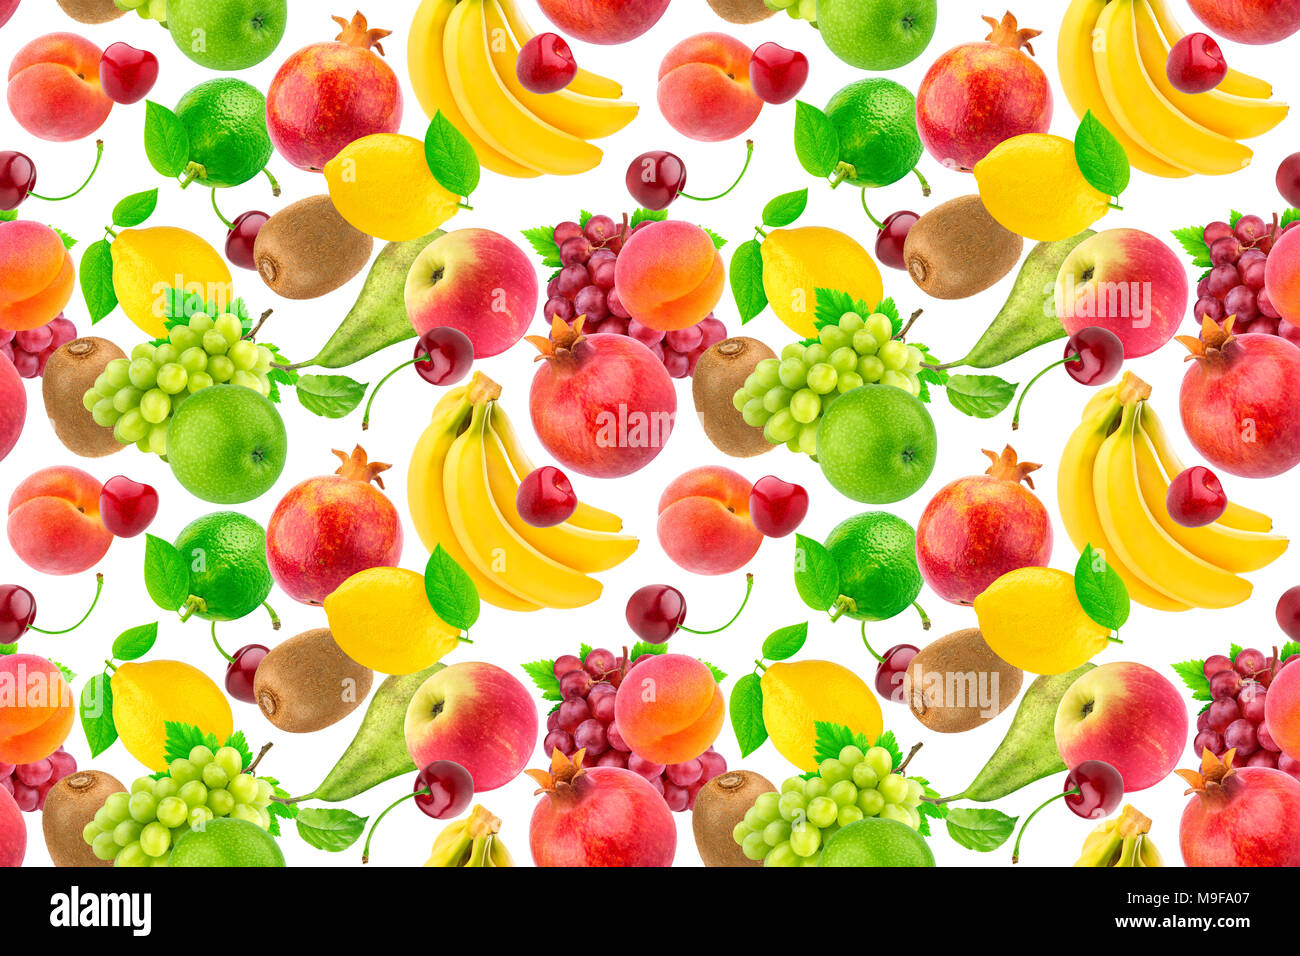 Modello senza giunture dei diversi tipi di frutta e bacche. Flying frutti tropicali isolati su sfondo bianco Foto Stock